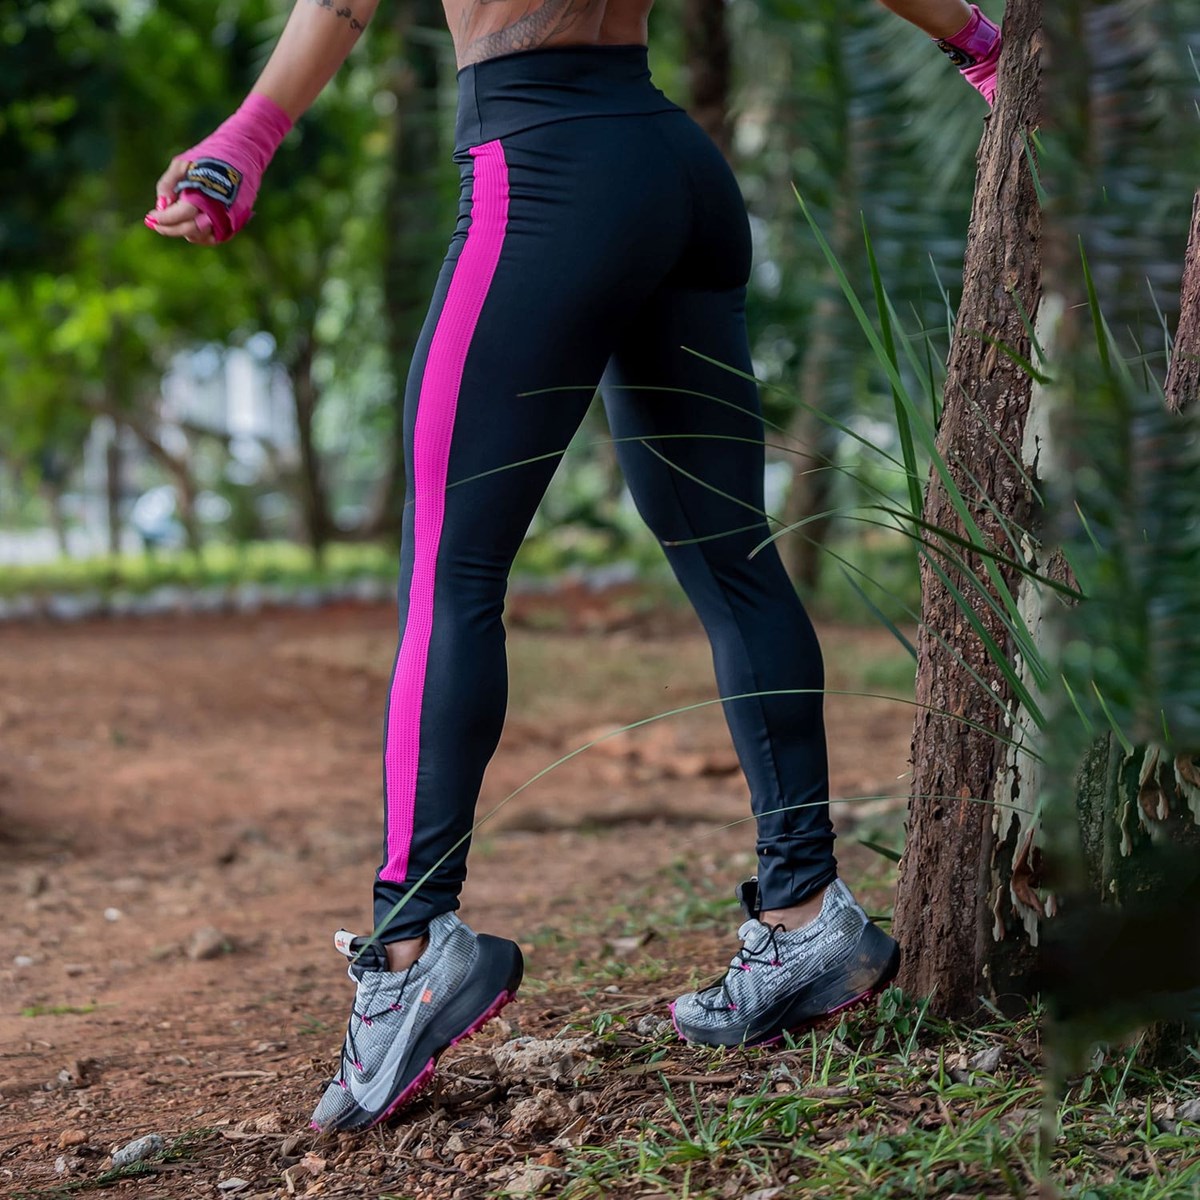 Calça Punho Fitness Preta com Tela de Poliamida Rosa | Ref: 4.4.4259-0121